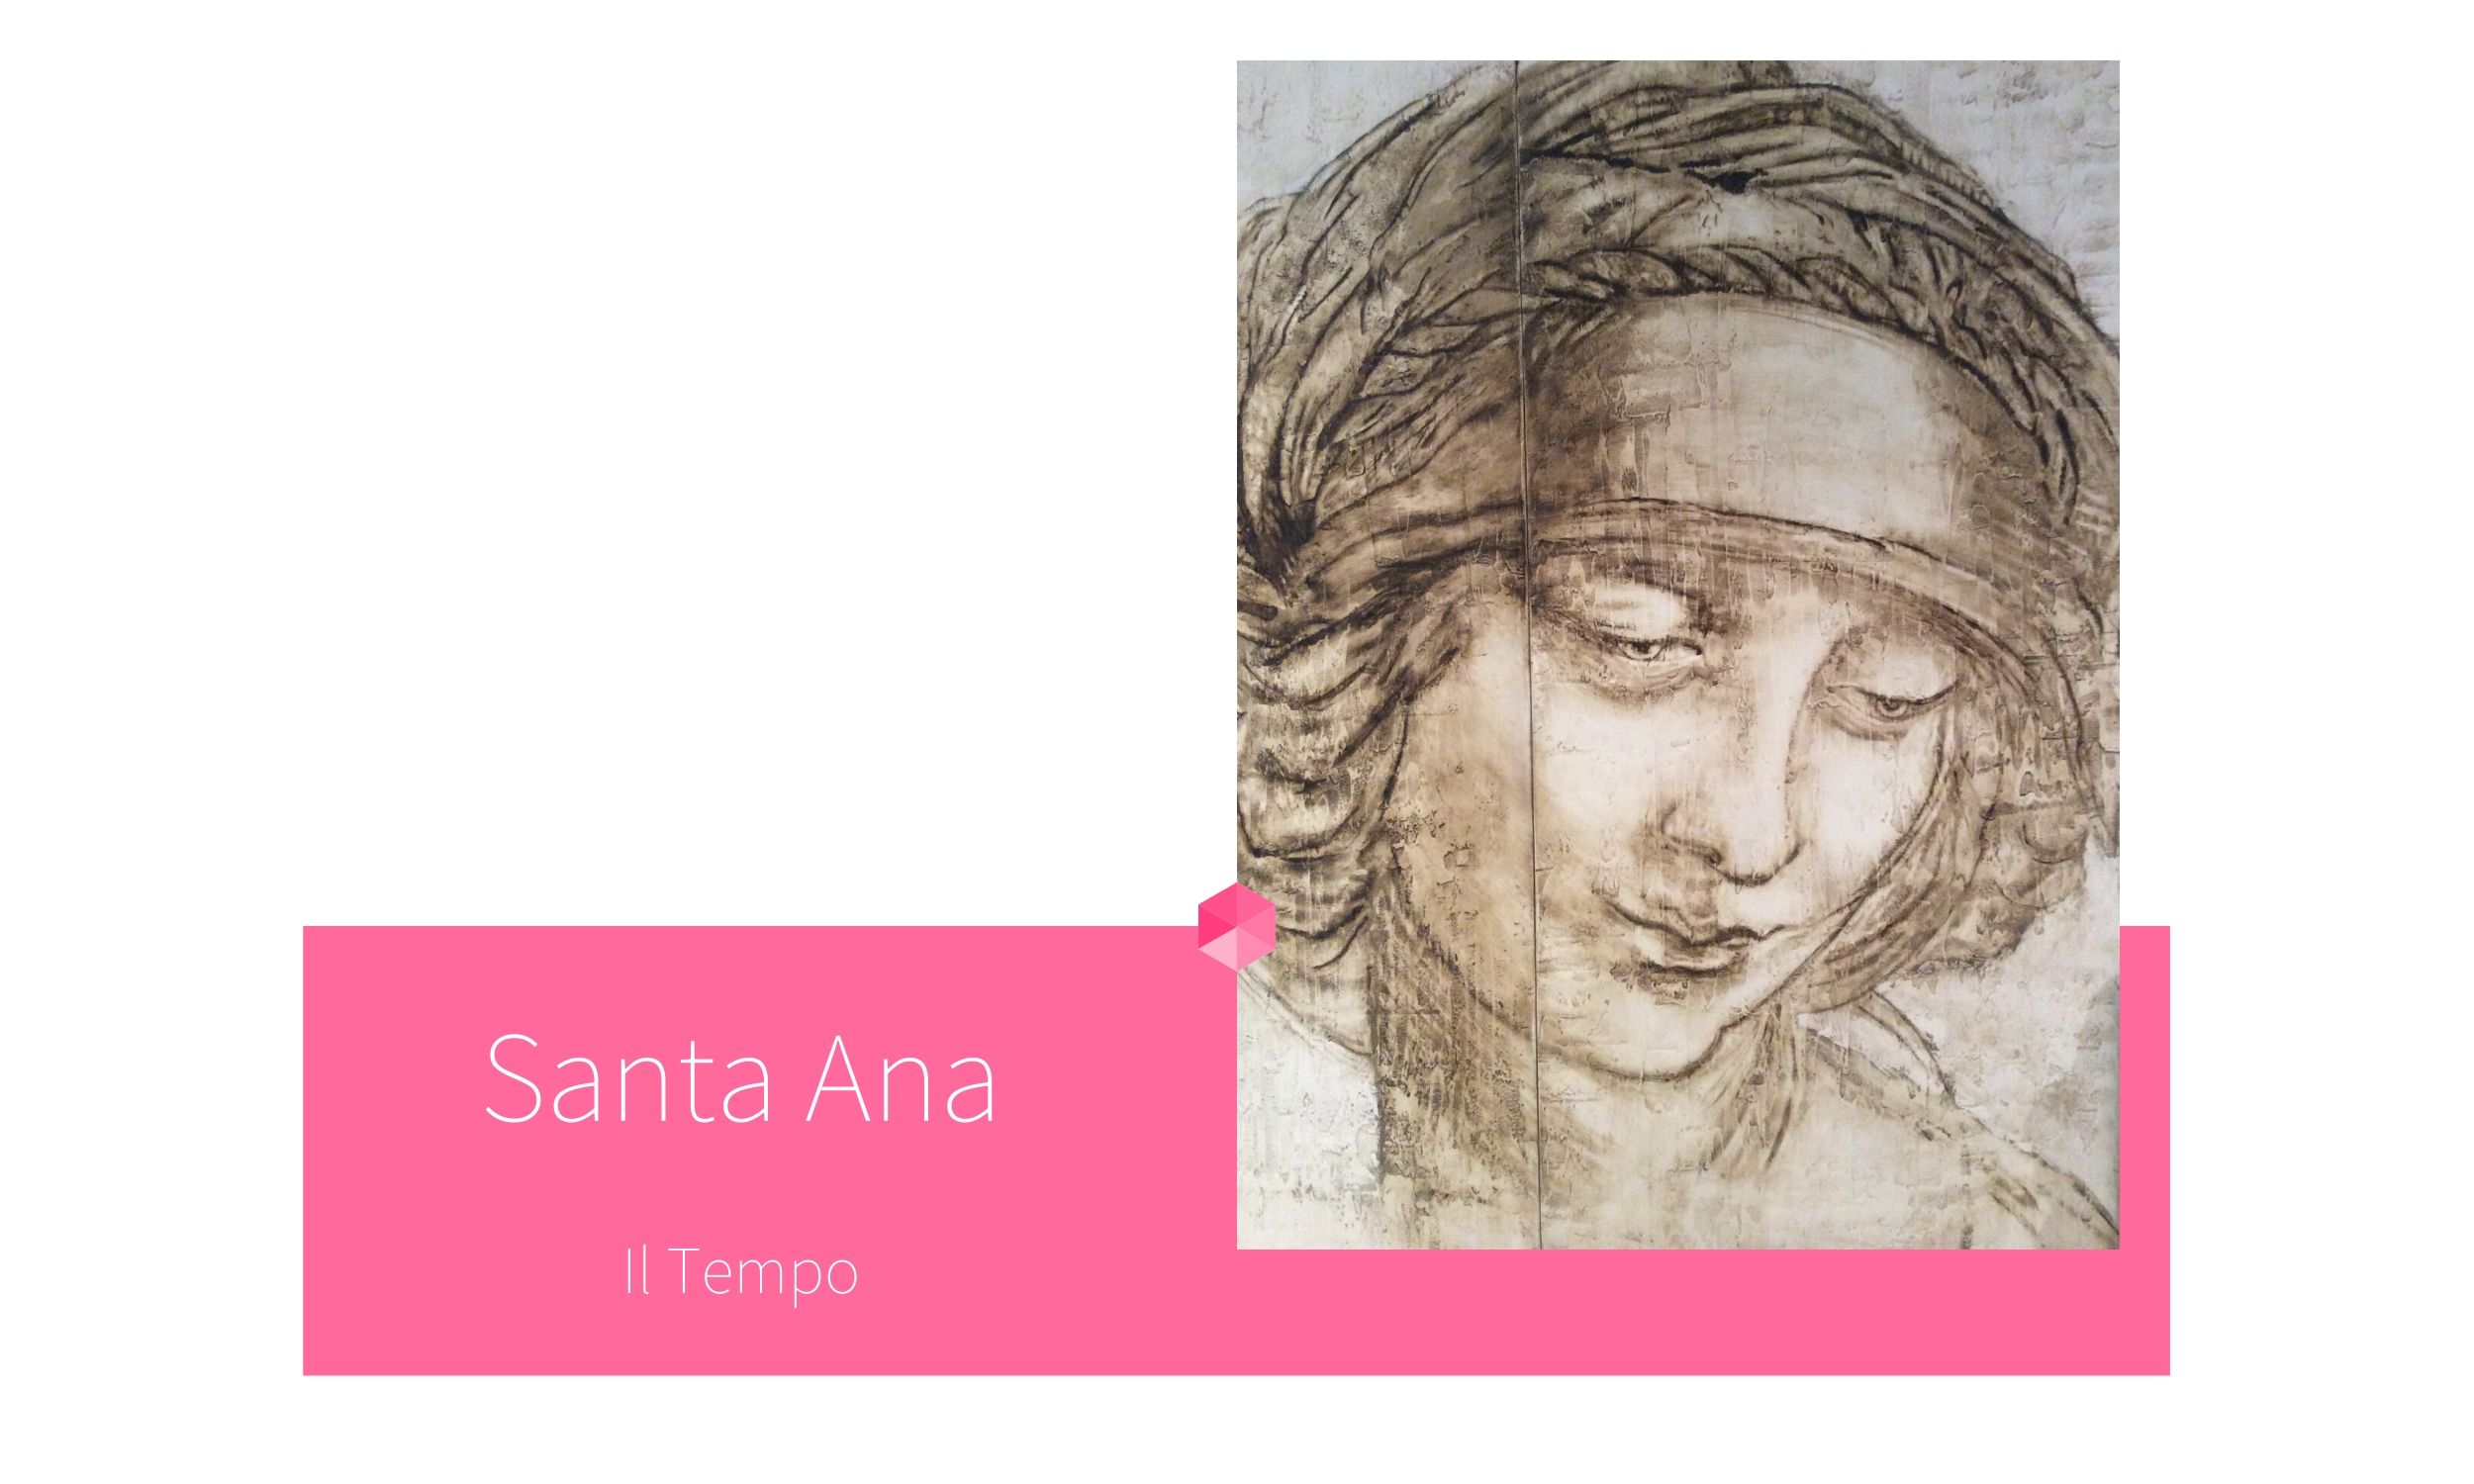 SANTA ANA | por C.J. Ruiz
Colección Flor de Ziur | IL TEMPO